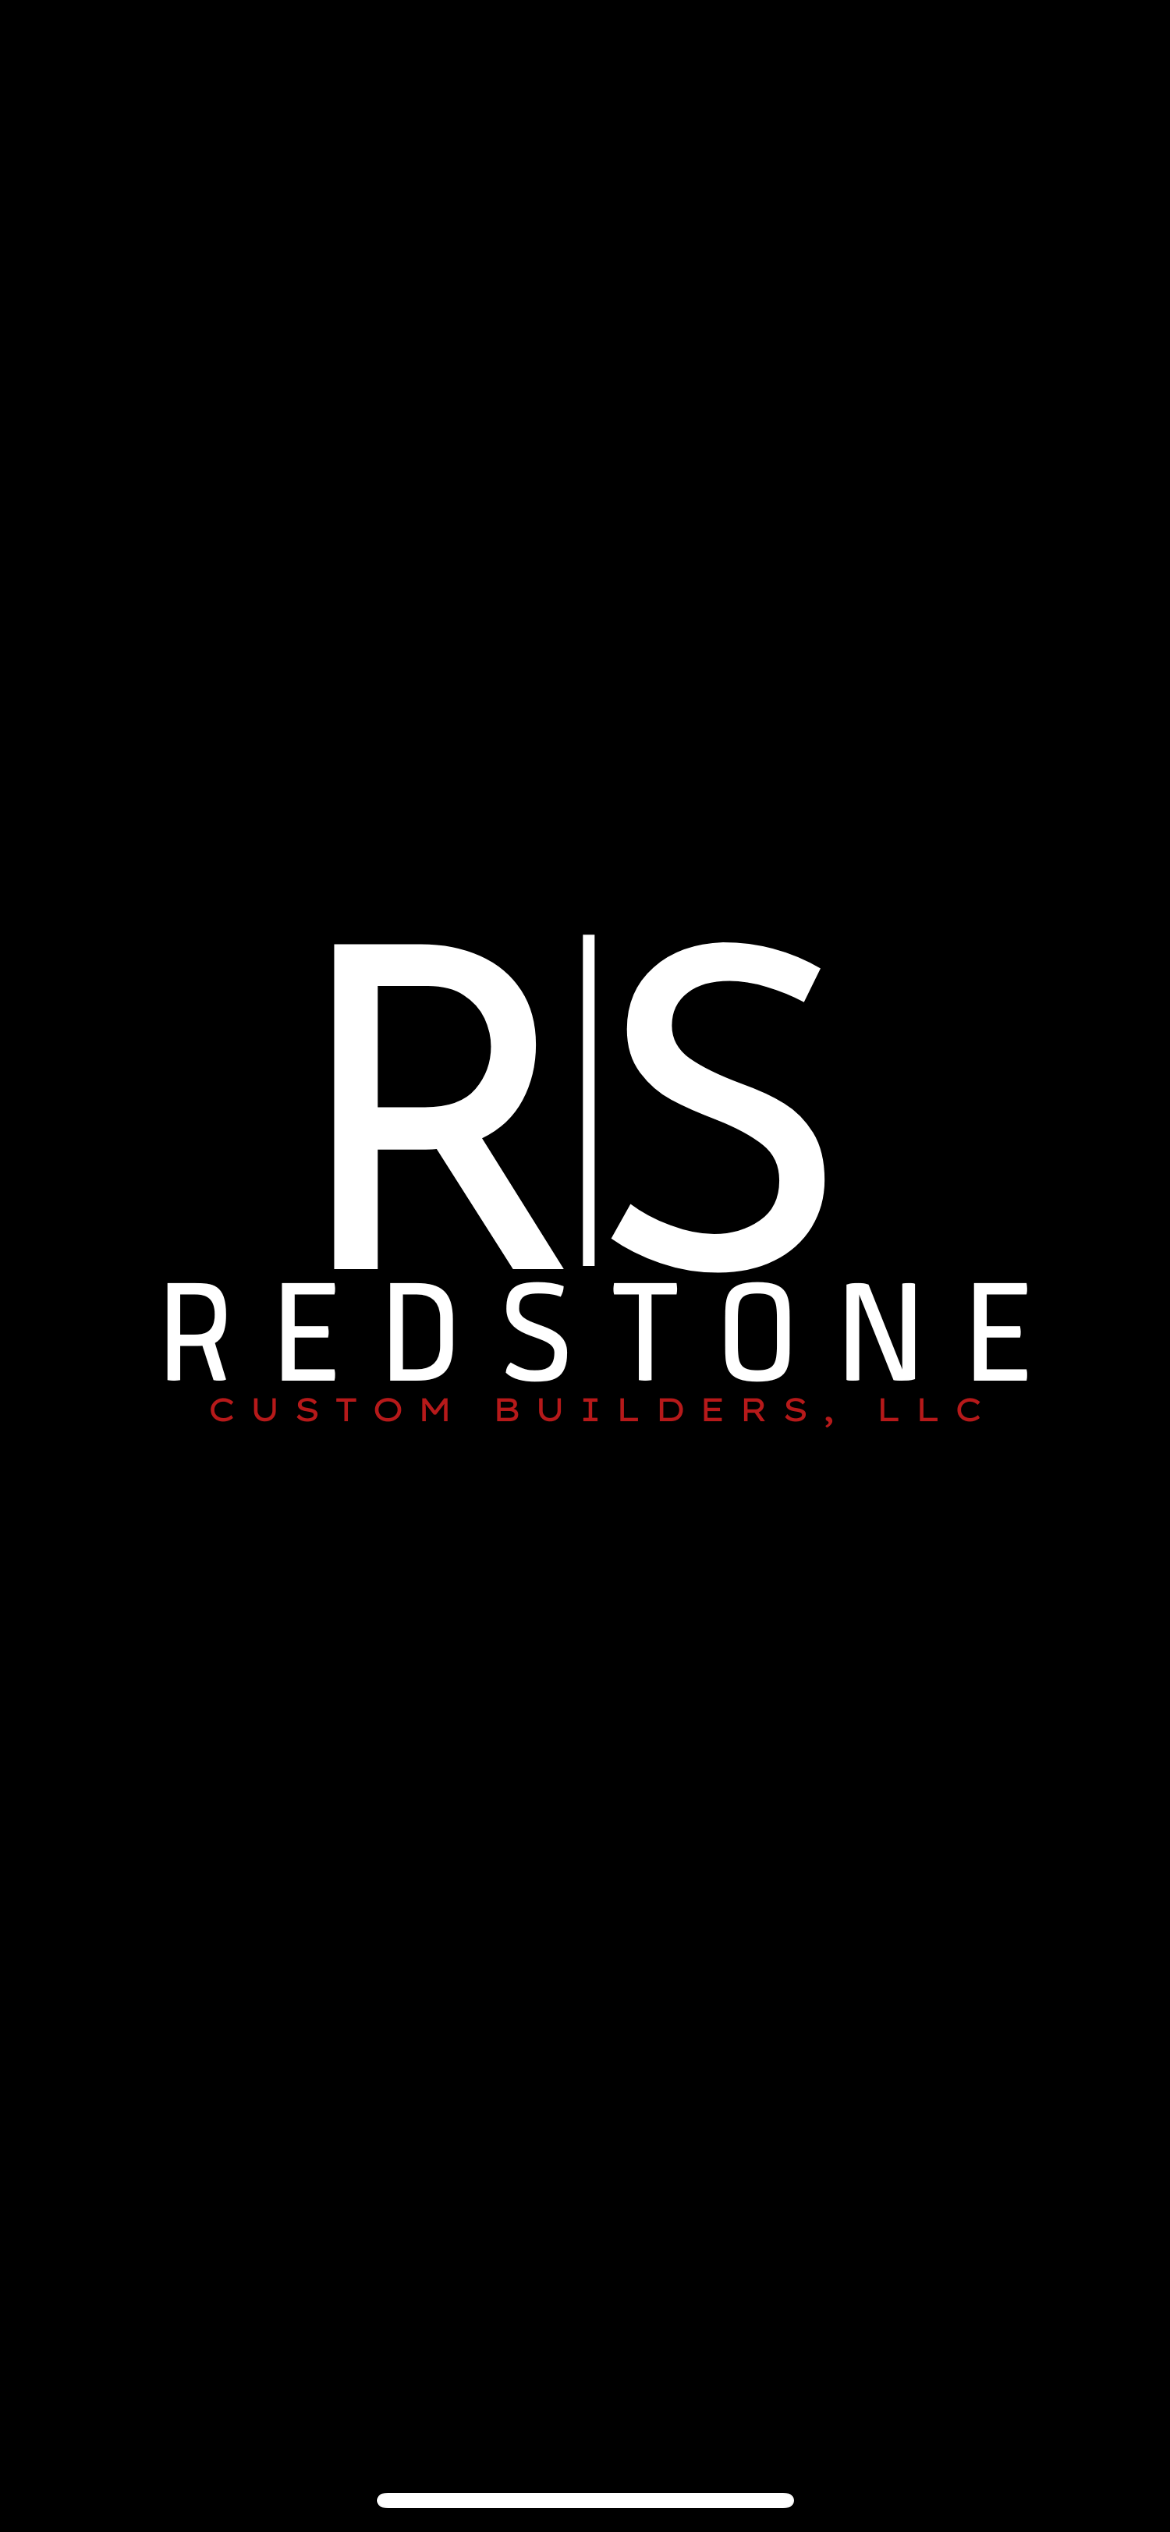 Redstone Custom Builders